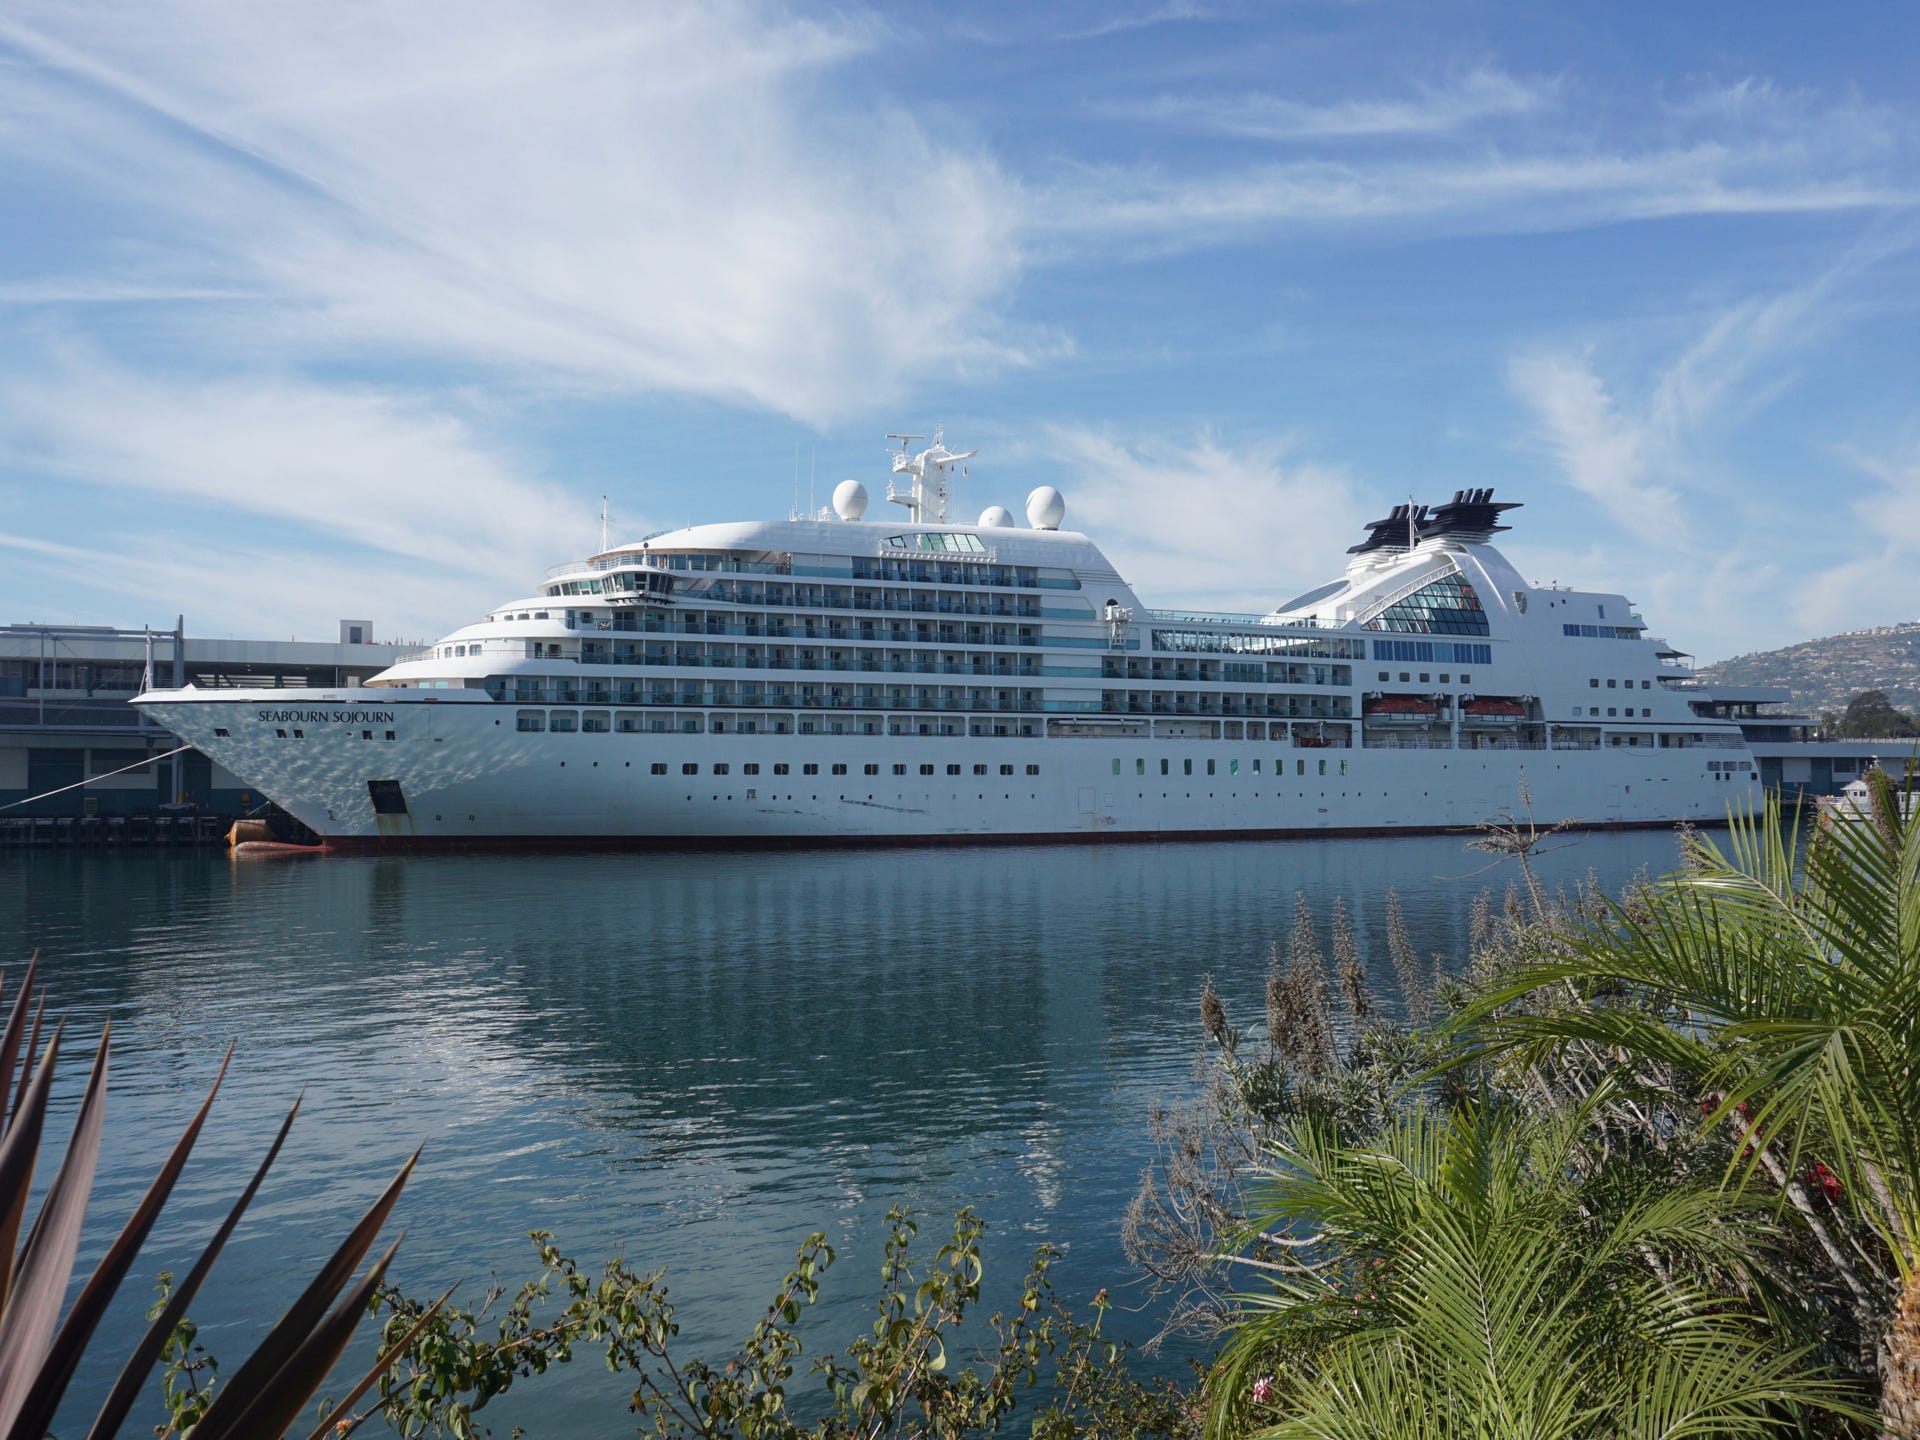 seabourn luxury cruises